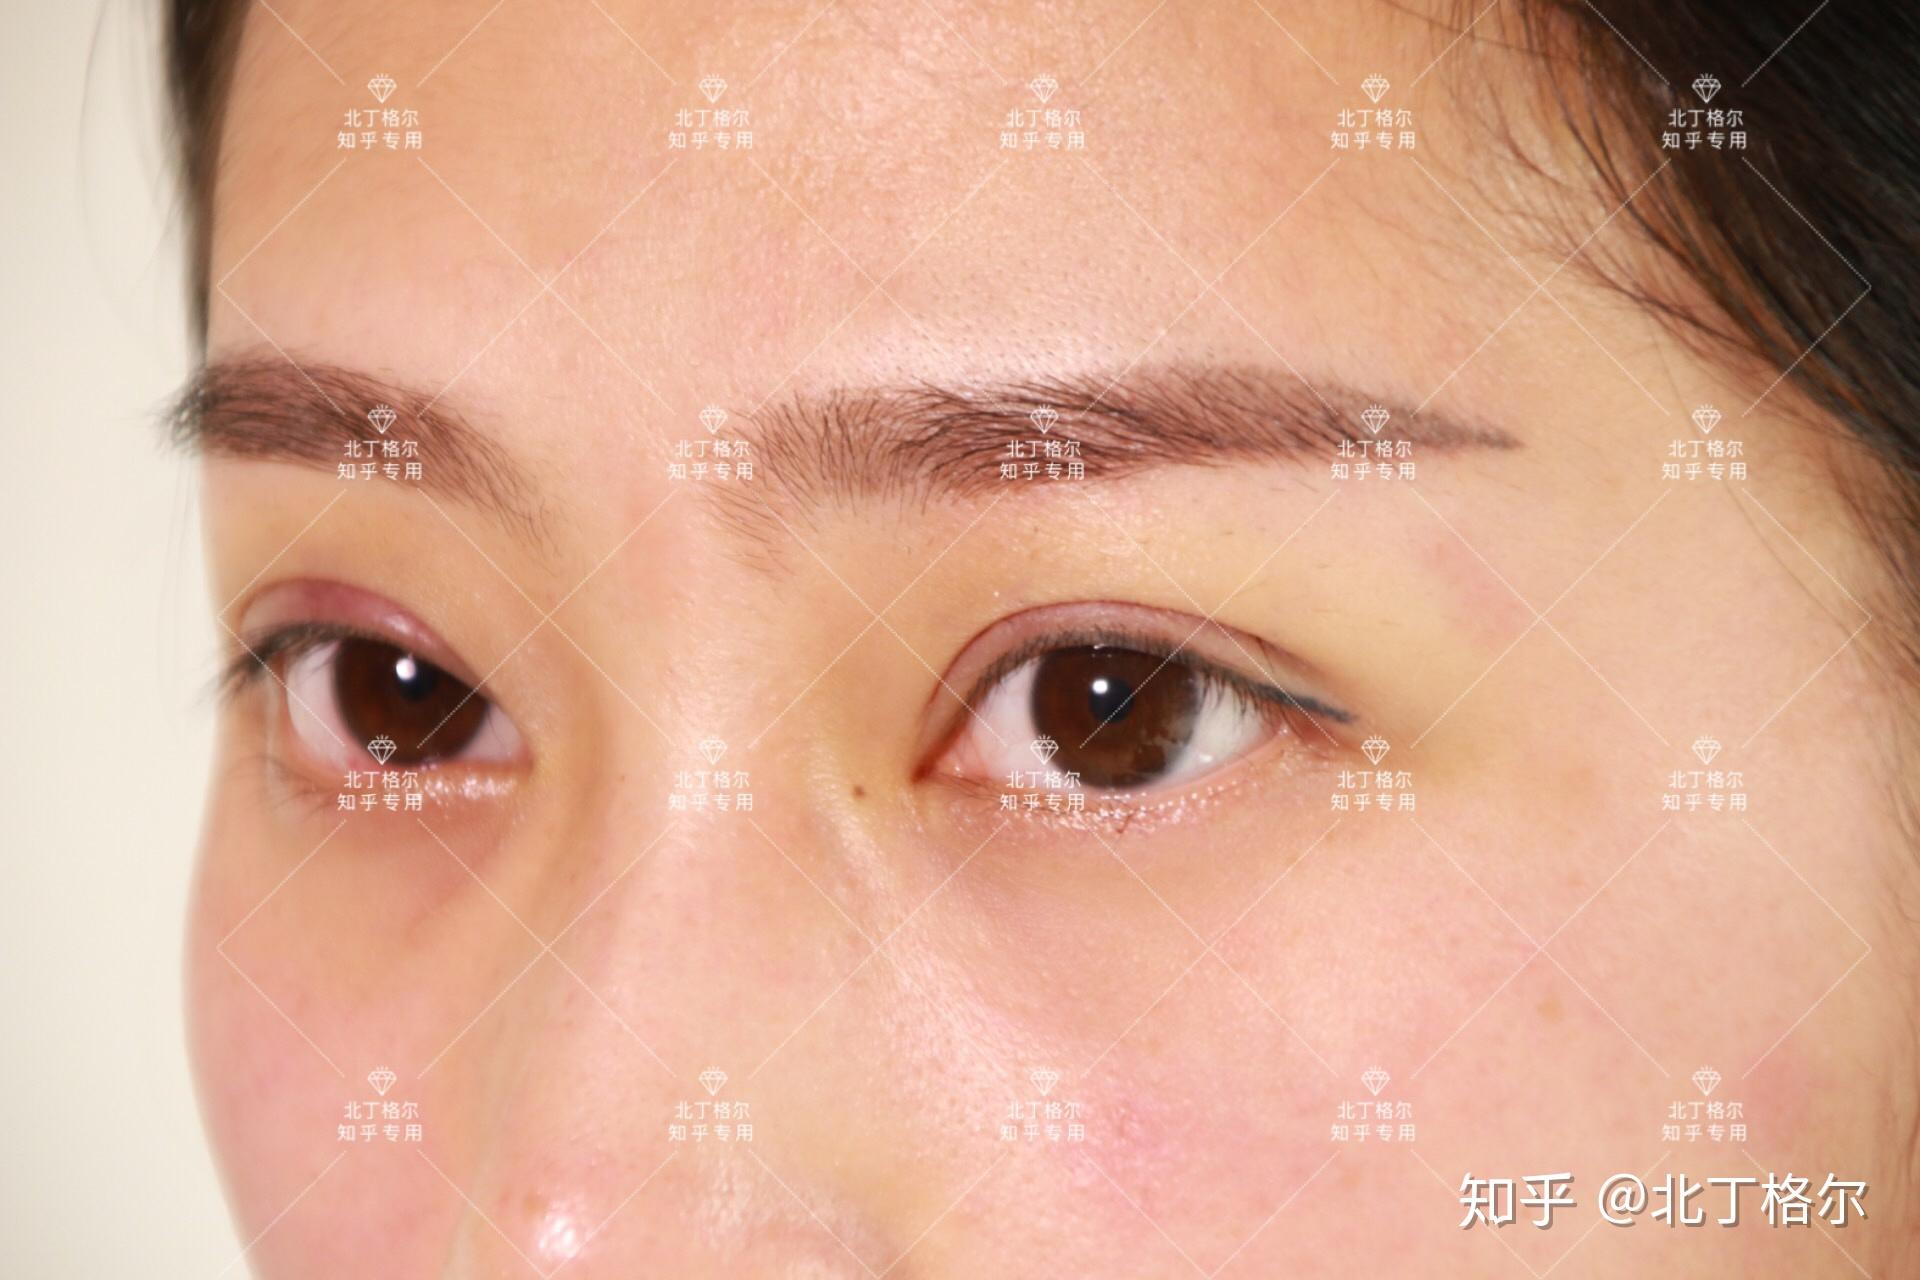 自己适合几毫米一般亚洲人割双眼皮的宽度都在5mm~8mm稍微懂点的人